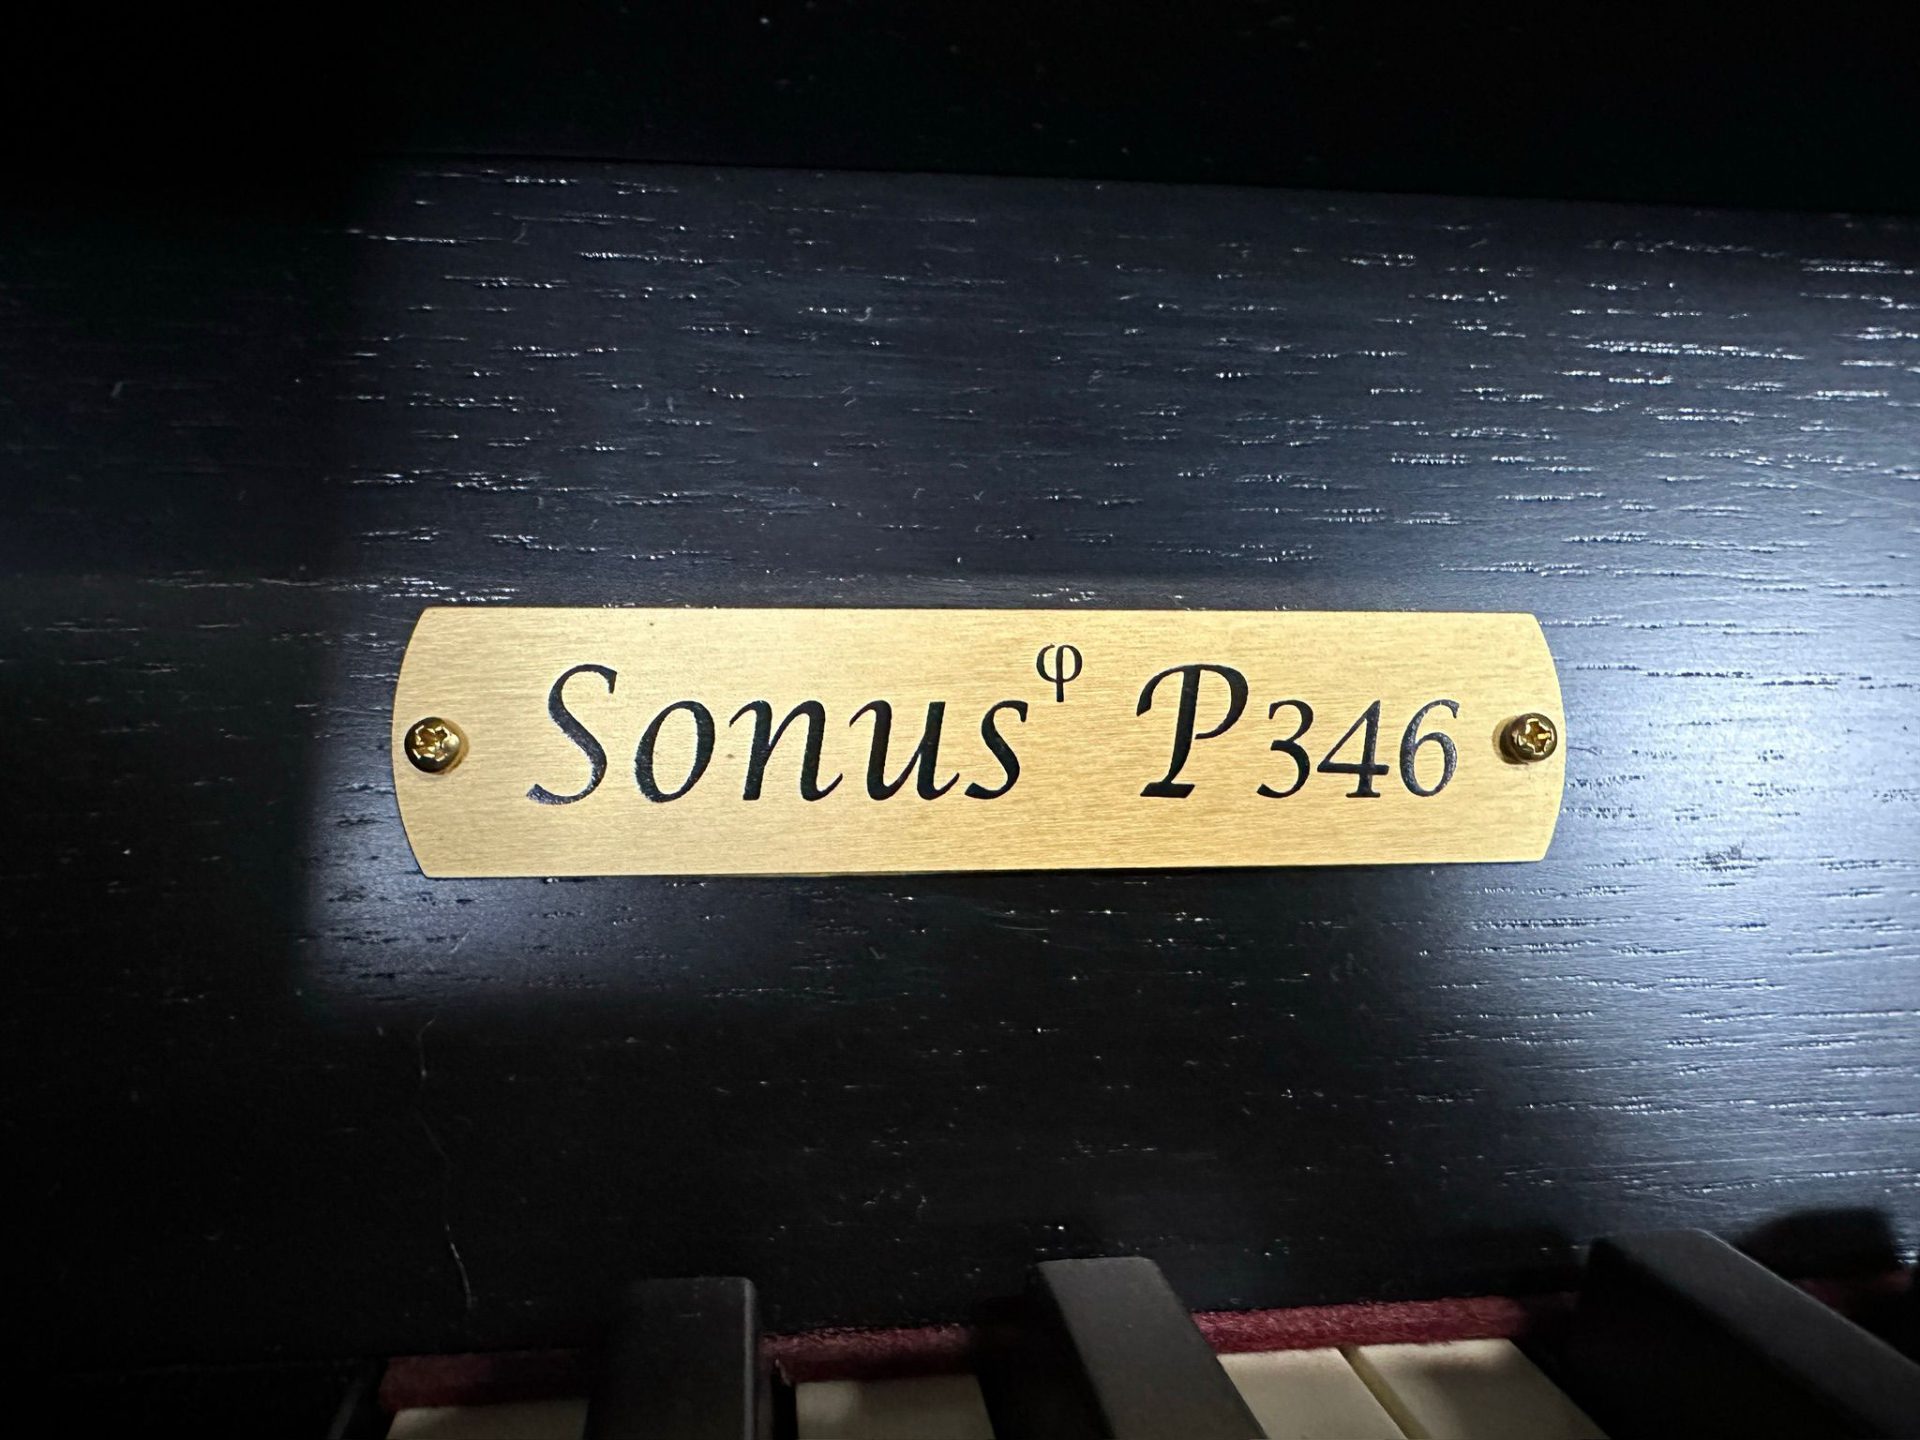 Viscount Sonus P346 Andante Orgels